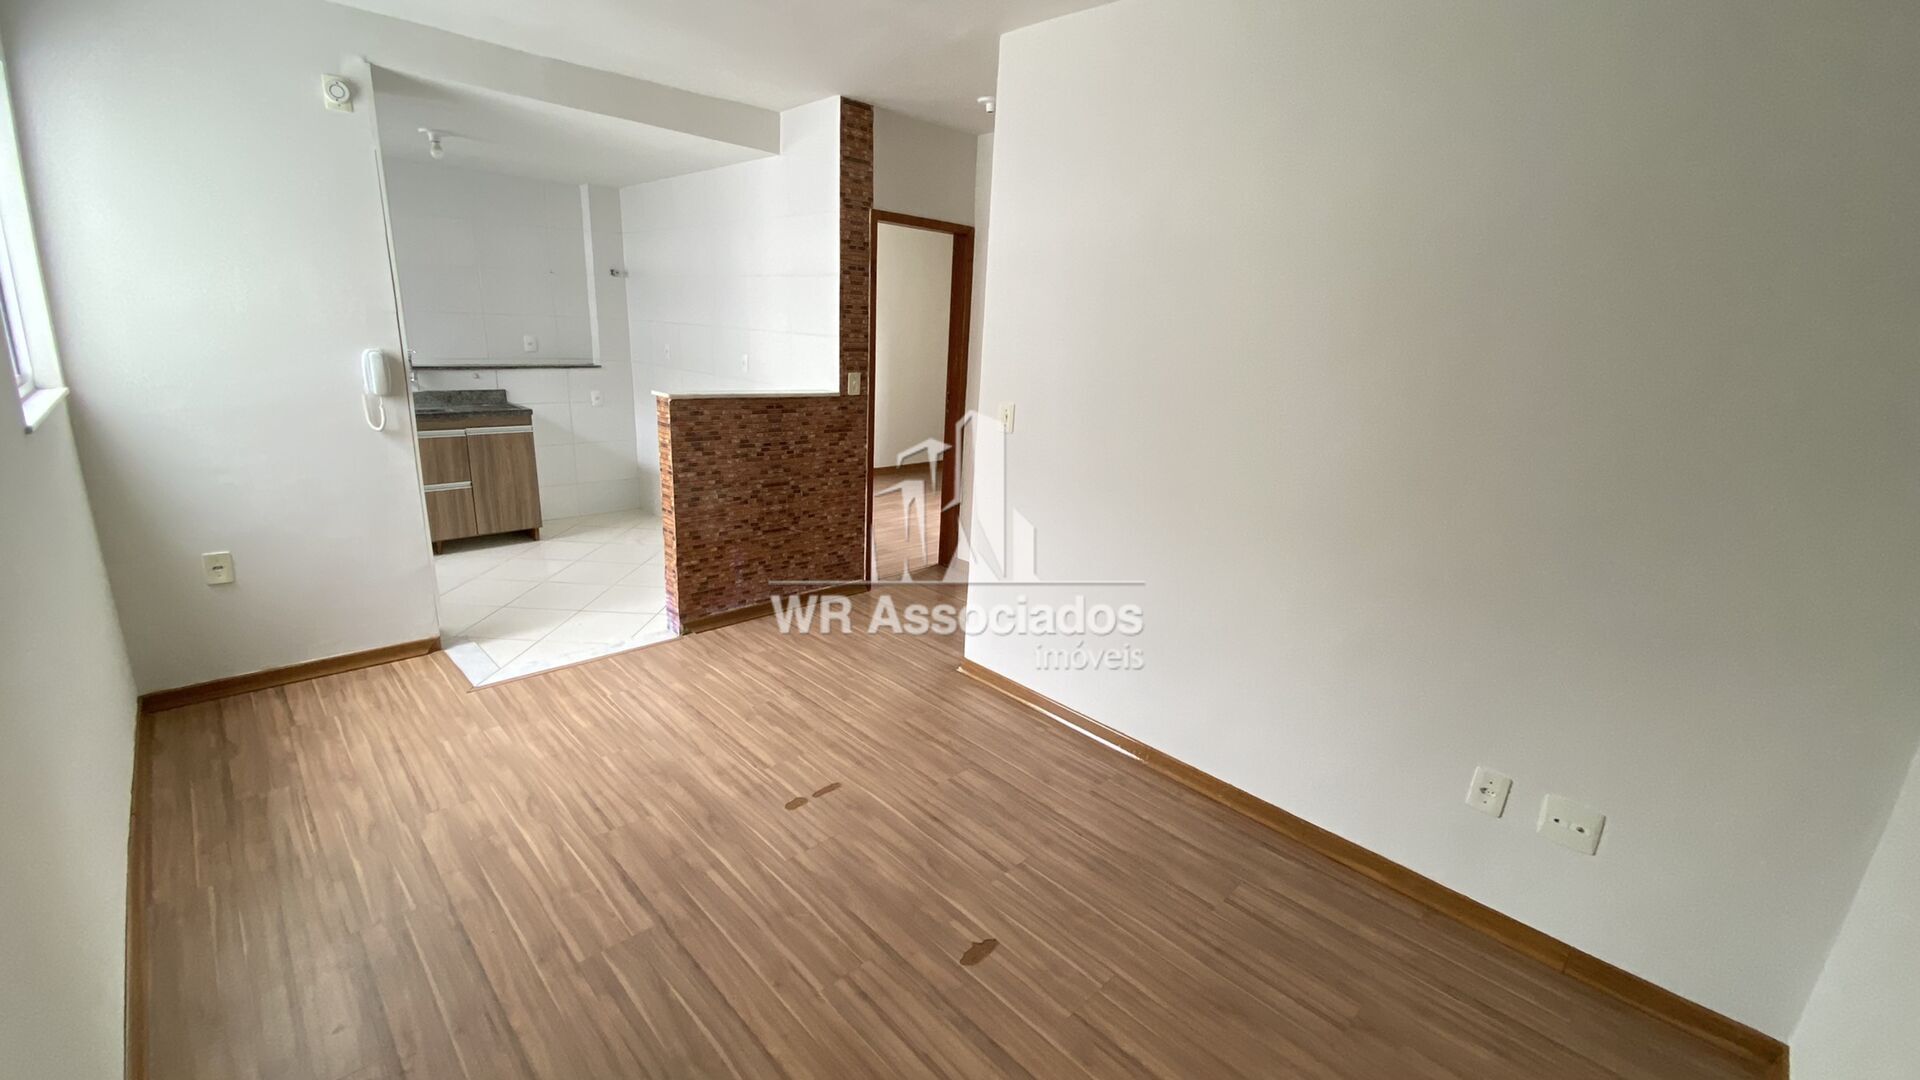 Apartamento, 2 quartos, 51 m² - Foto 2